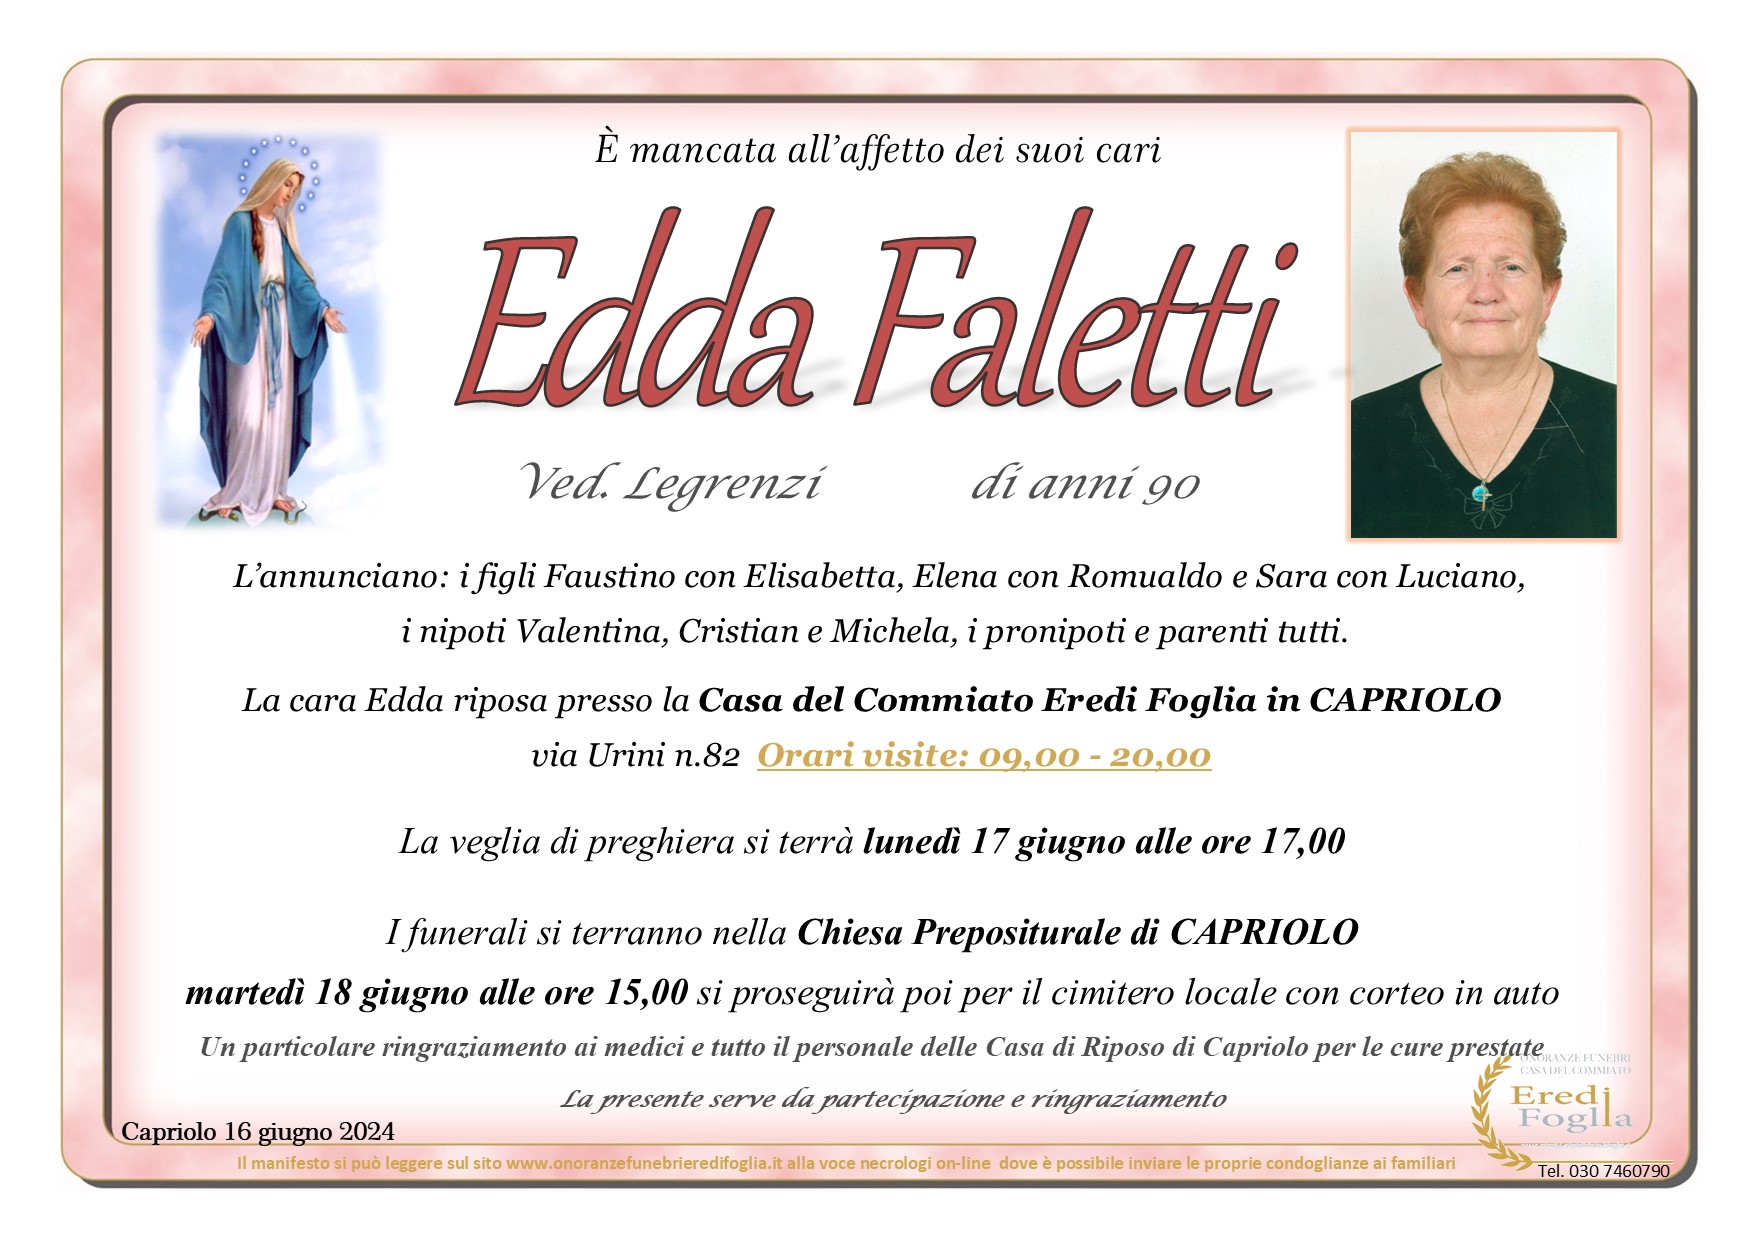 Edda Faletti